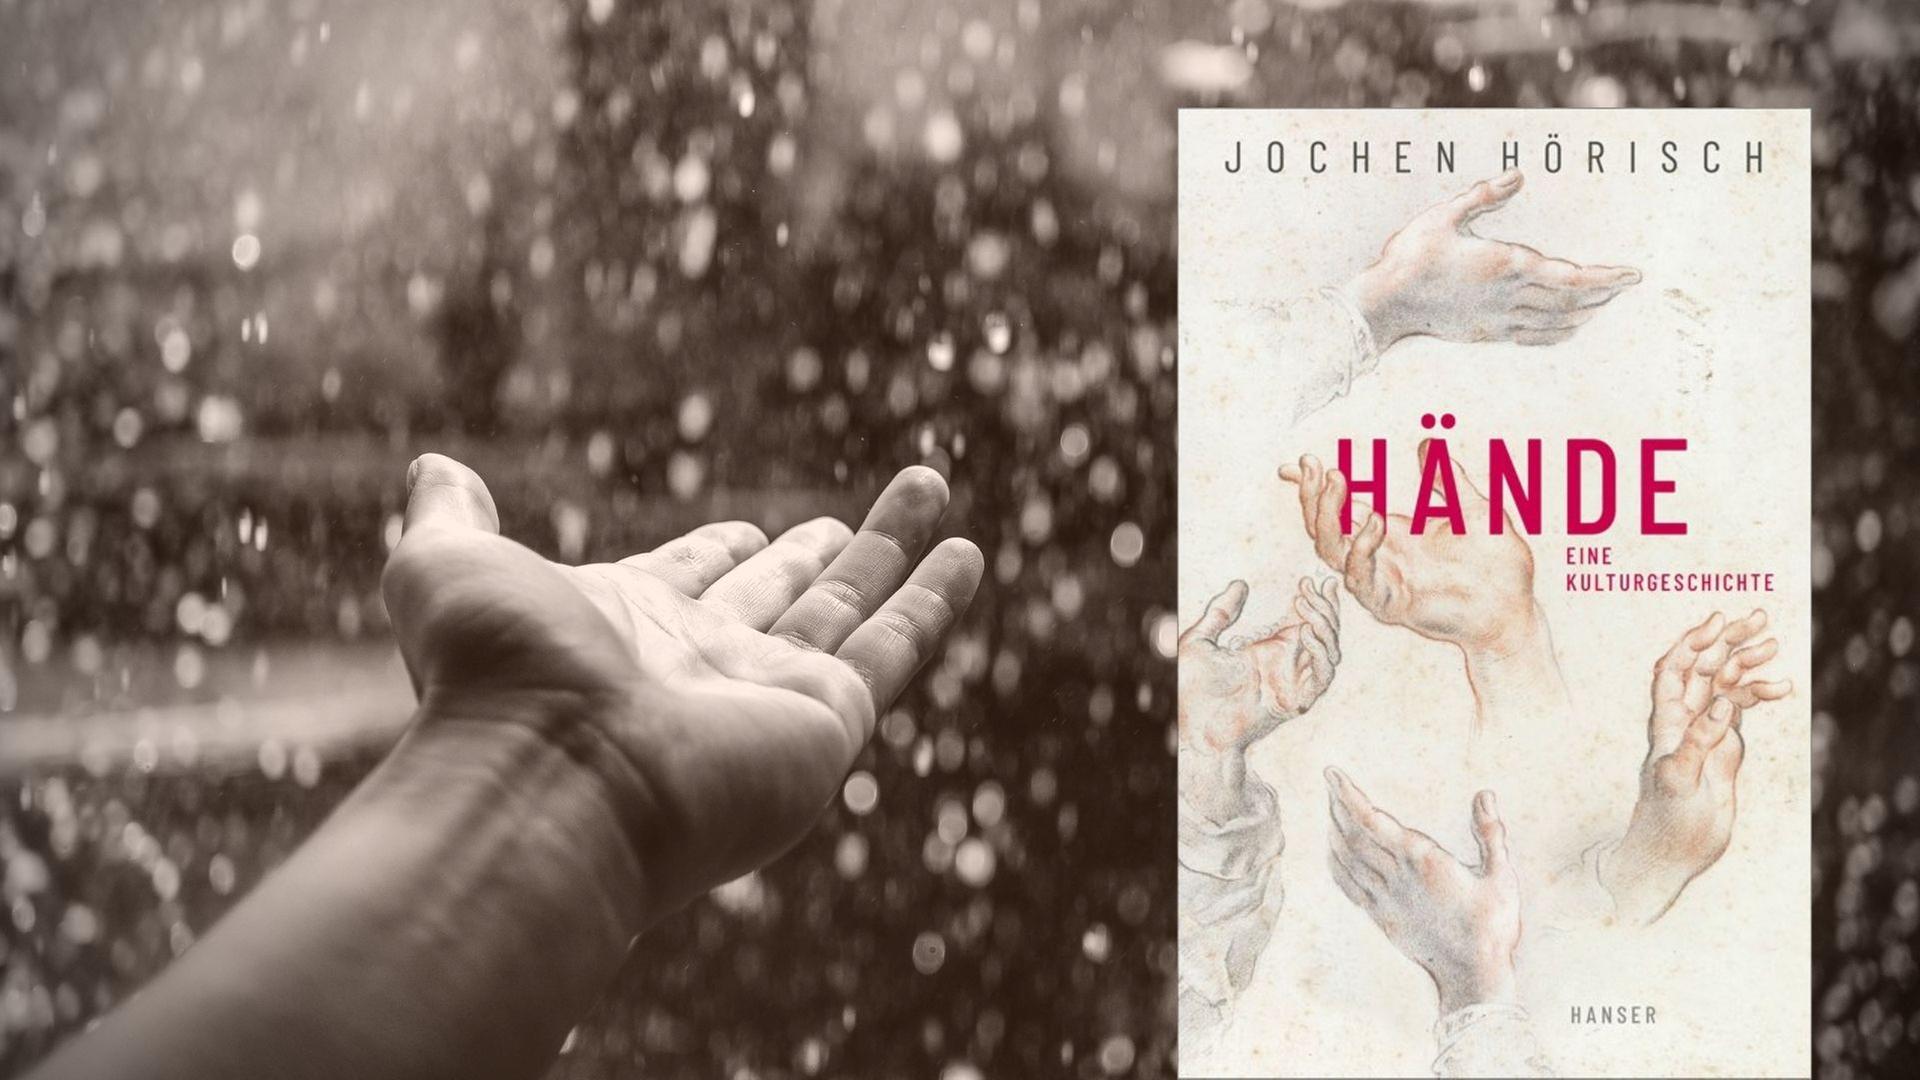 Collage: Vordergrund: Buchcover "Hände. Eine Kulturgeschichte" // Hintergrund: Stockimage Hand